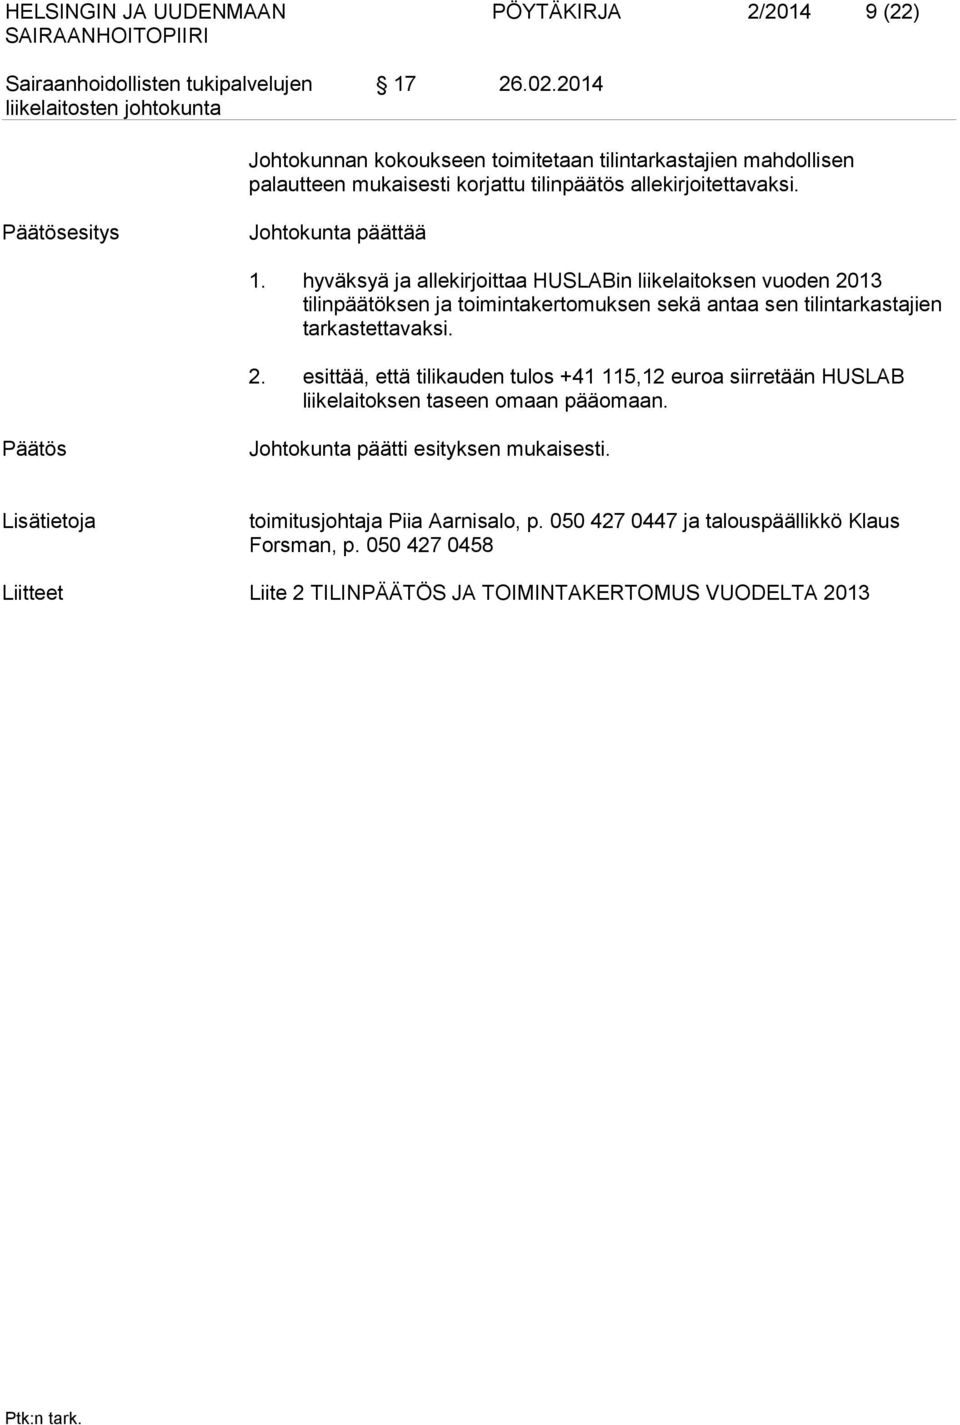 hyväksyä ja allekirjoittaa HUSLABin liikelaitoksen vuoden 2013 tilinpäätöksen ja toimintakertomuksen sekä antaa sen tilintarkastajien tarkastettavaksi. 2. esittää, että tilikauden tulos +41 115,12 euroa siirretään HUSLAB liikelaitoksen taseen omaan pääomaan.